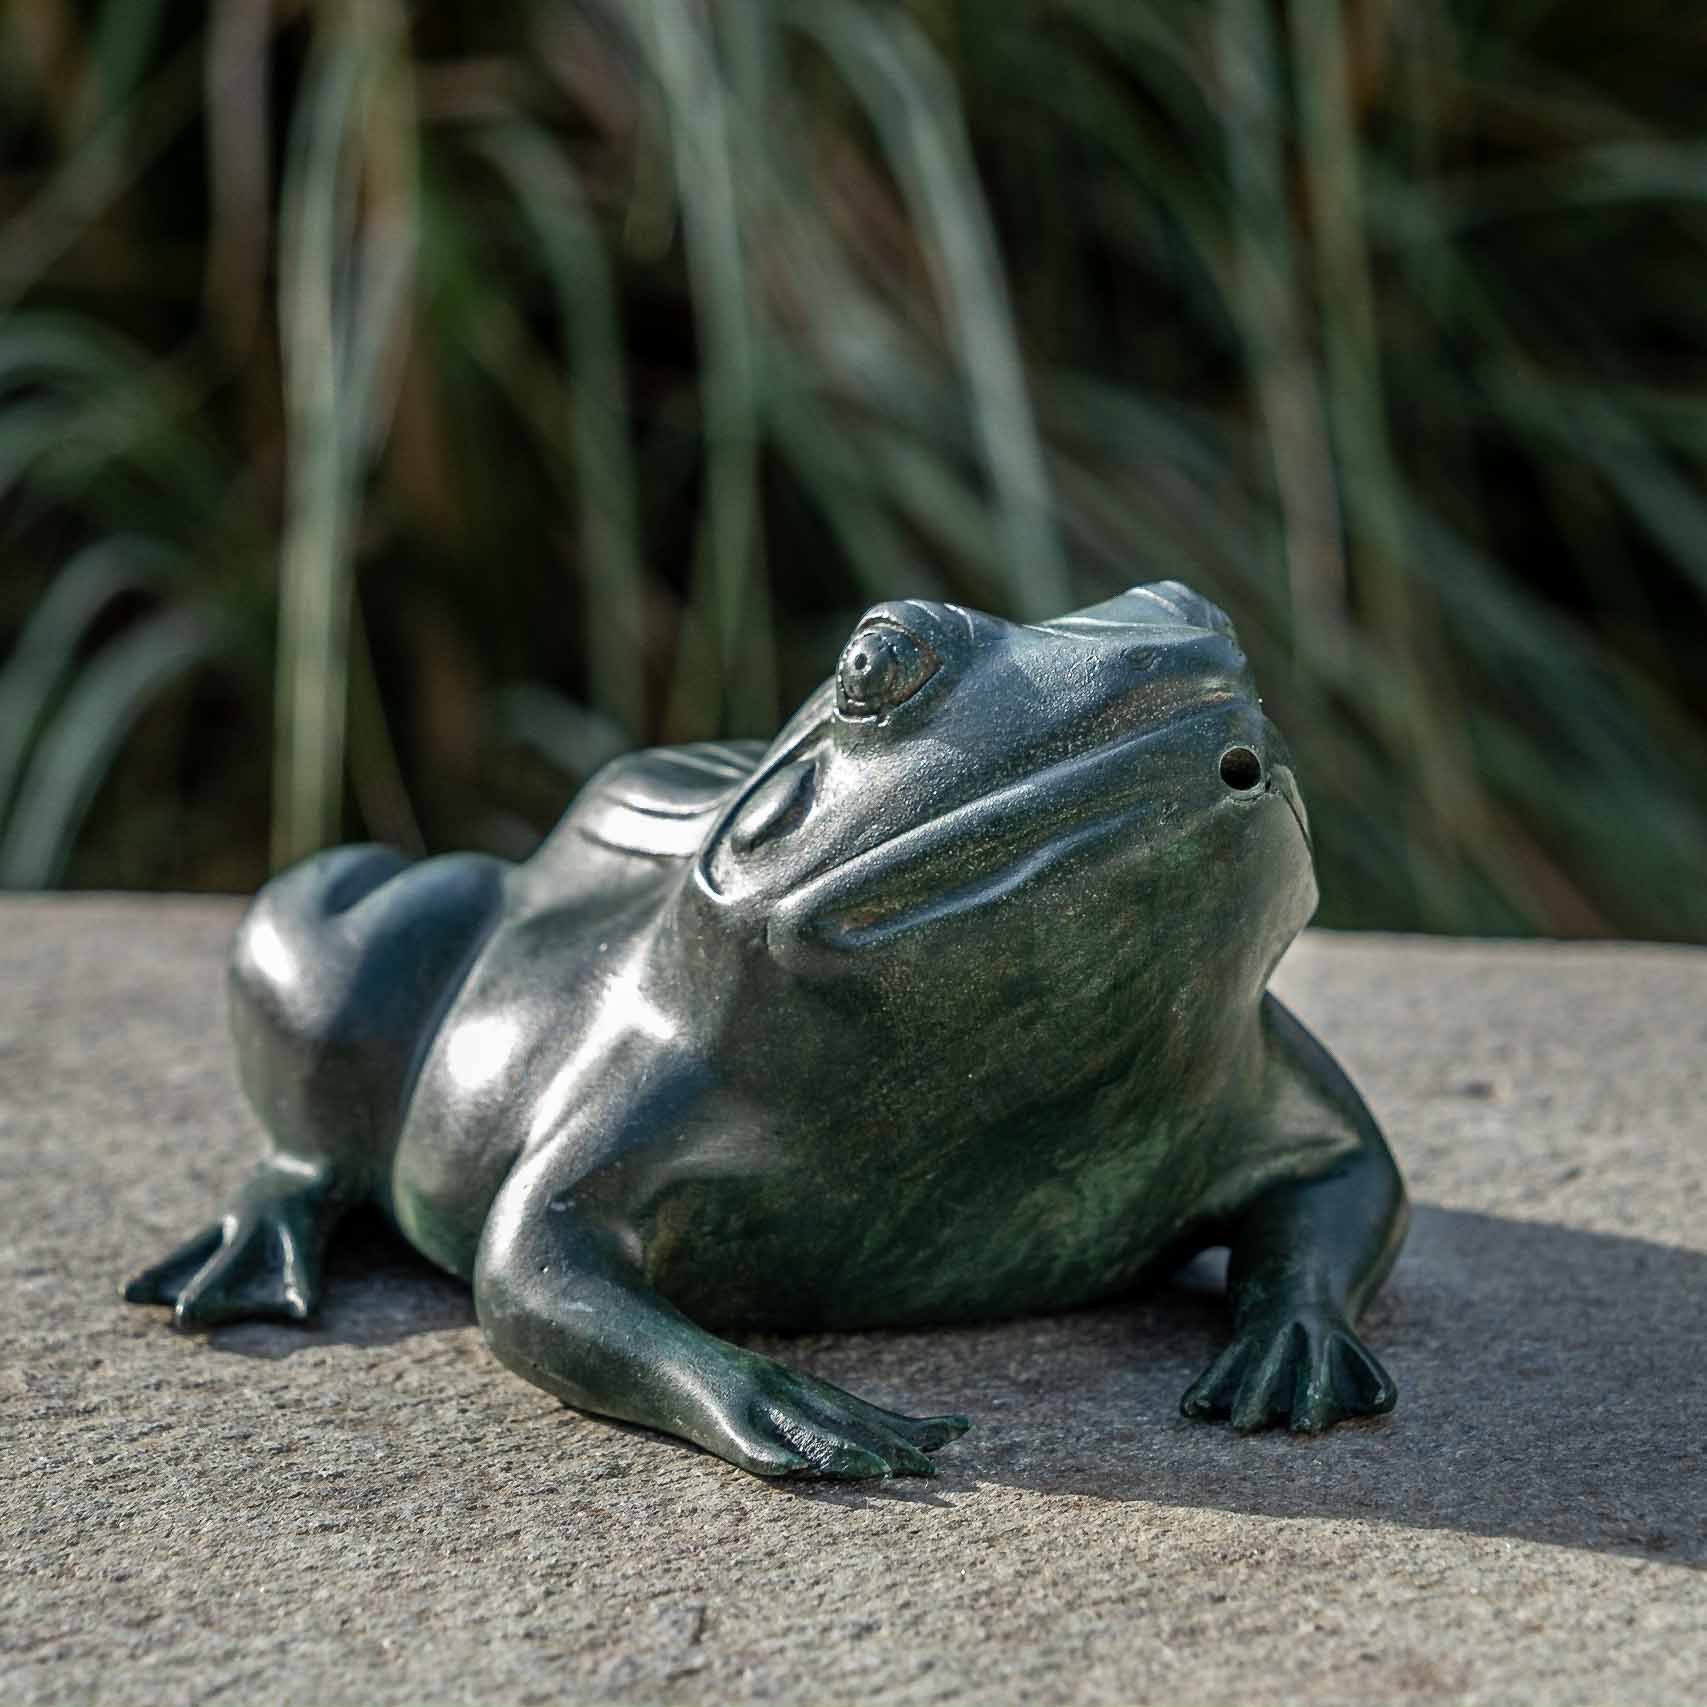 IDYL Gartenfigur IDYL Bronze-Skulptur Grüner Frosch wasserspeiend, Bronze – sehr robust – Langlebig – witterungsbeständig gegen Frost, Regen und UV-Strahlung. Die Modelle werden in Wachsausschmelzverfahren in Bronze gegossen und von Hand patiniert.